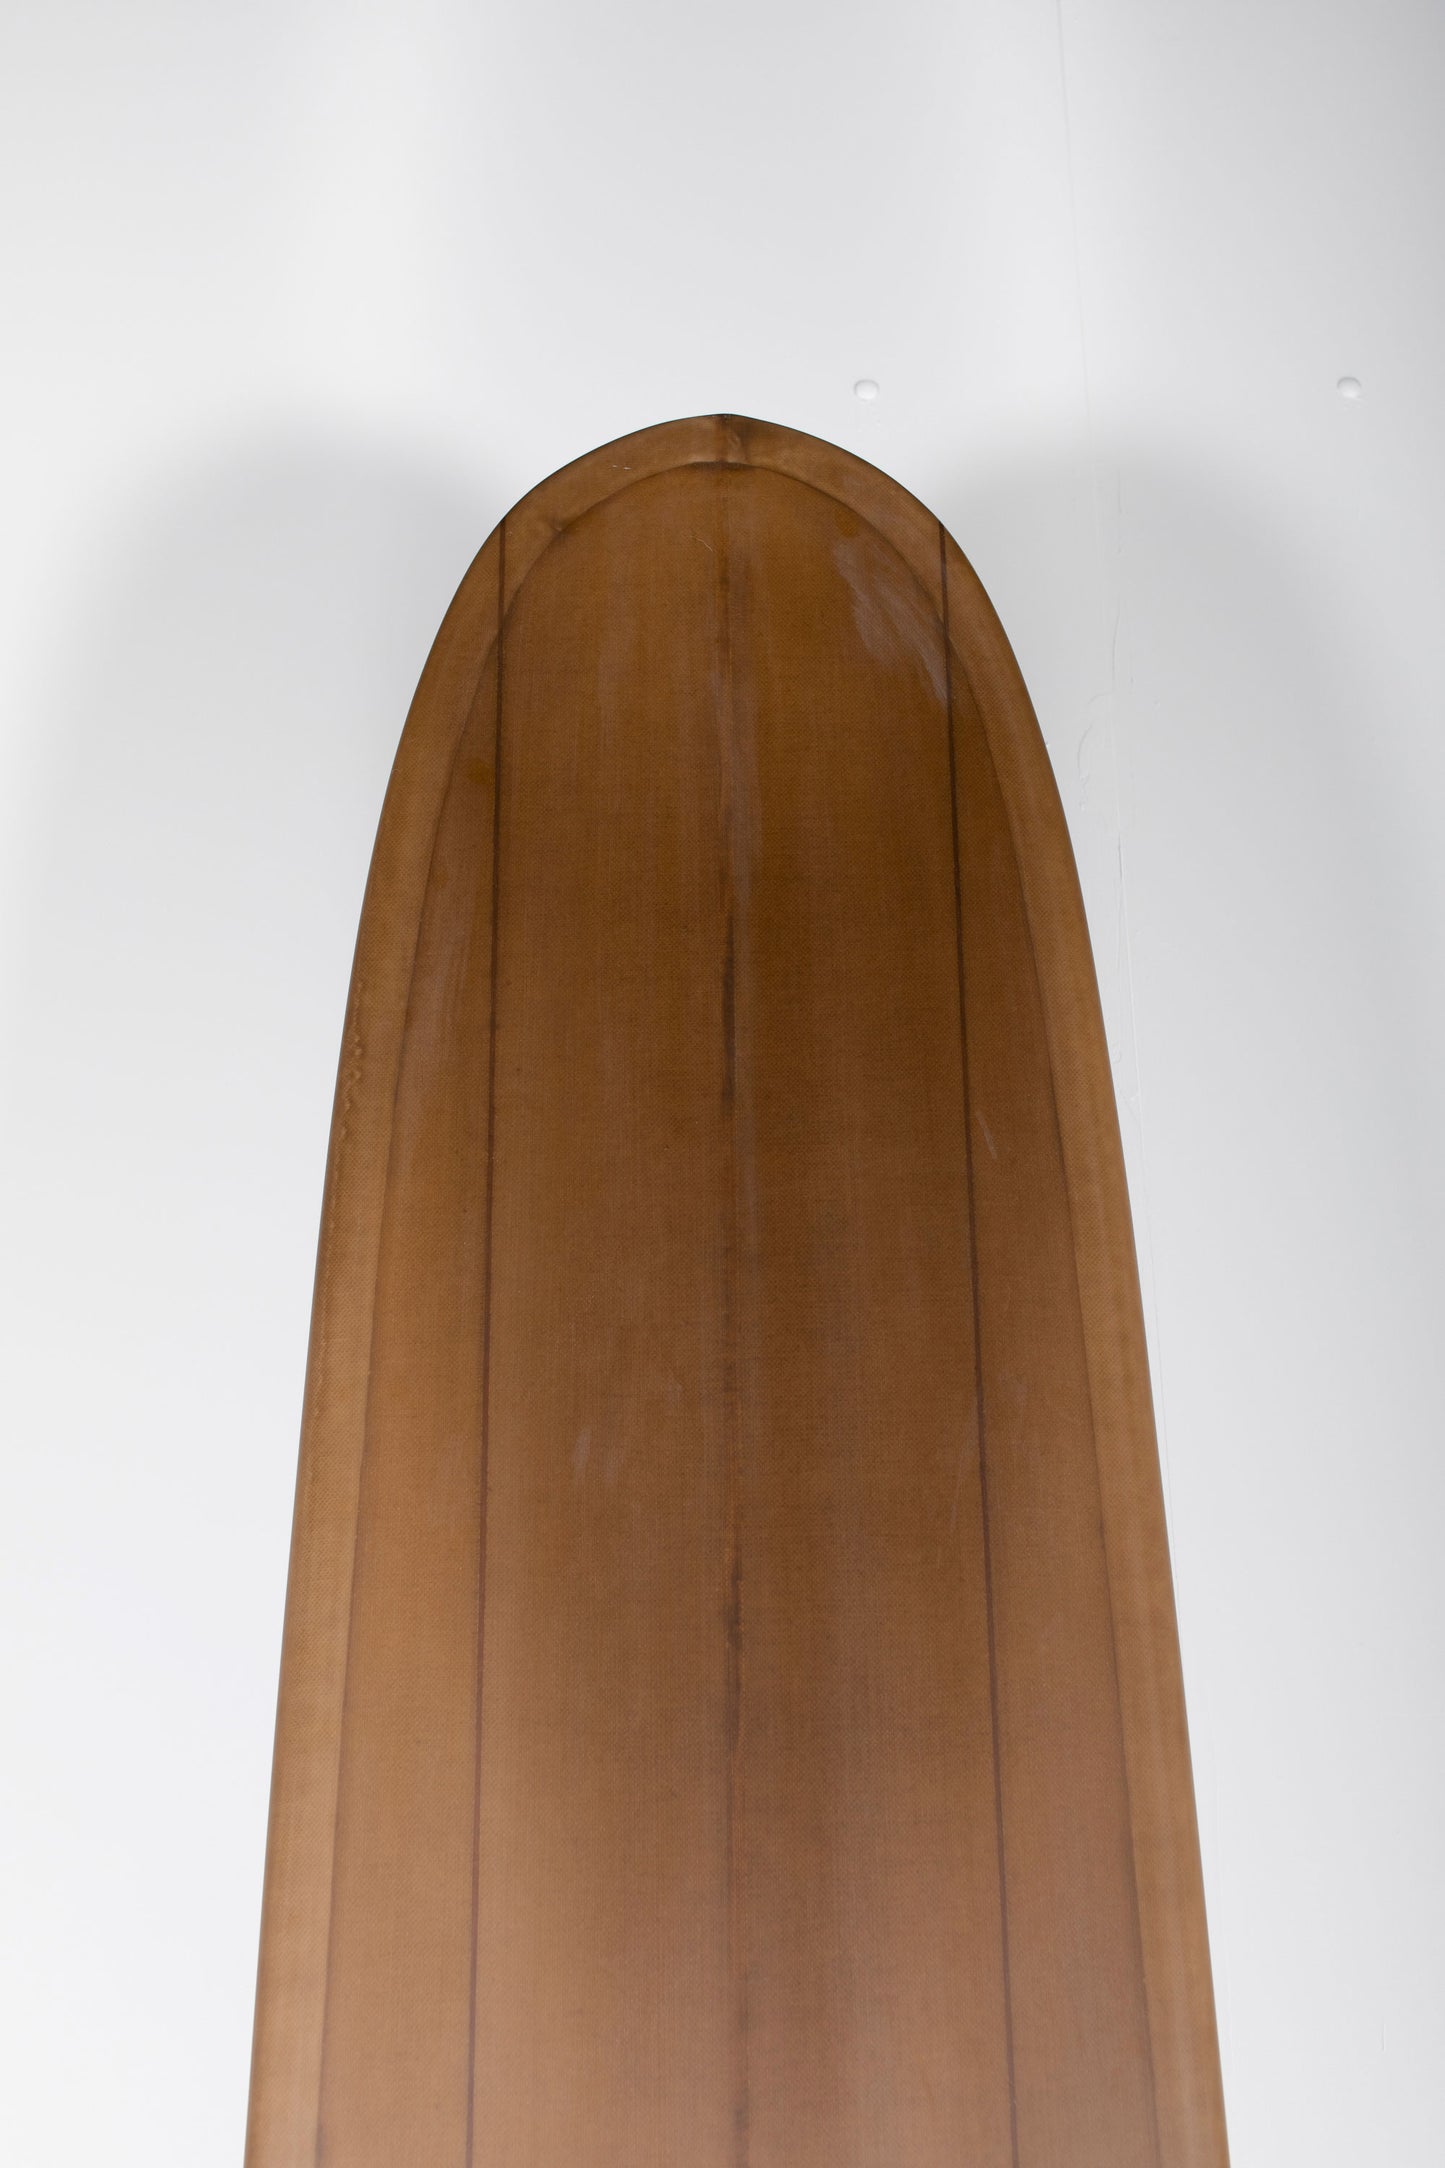 
                  
                    Garmendia Surfboards - NOSERIDER - 9’5" x 23" x 3" 1/16 - Ref.NOSERIDER95 at Pukas Surf Shop
                  
                